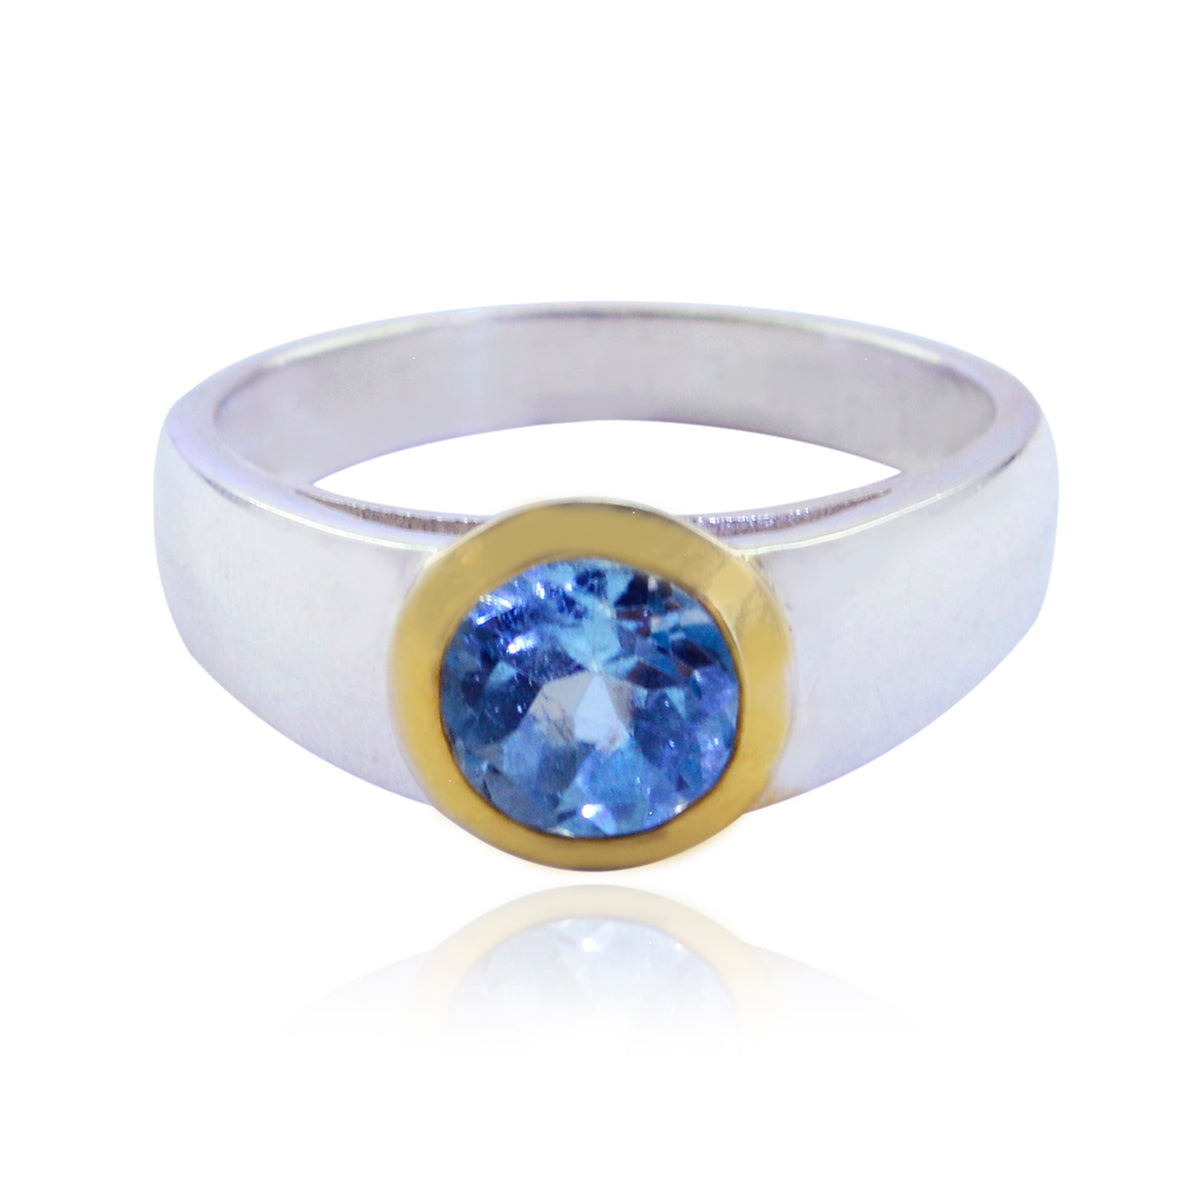 Riyo Teasing Gemstones Blue Topaz Sterling Silver Rings Jewelry Show